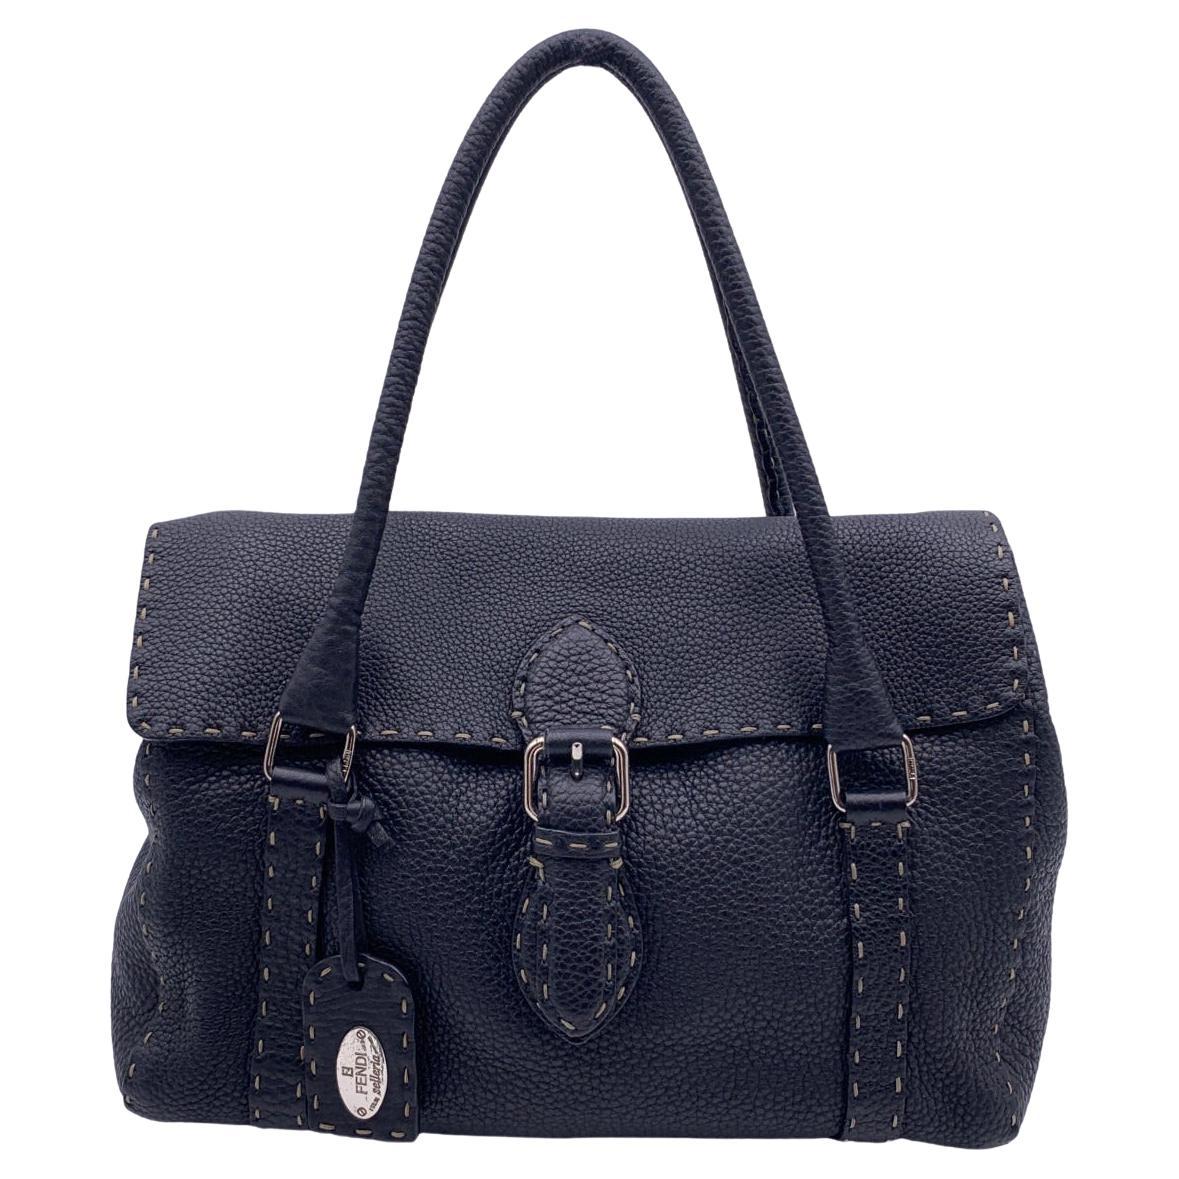 Fendi Selleria Black Leather Linda Satchel Handbag